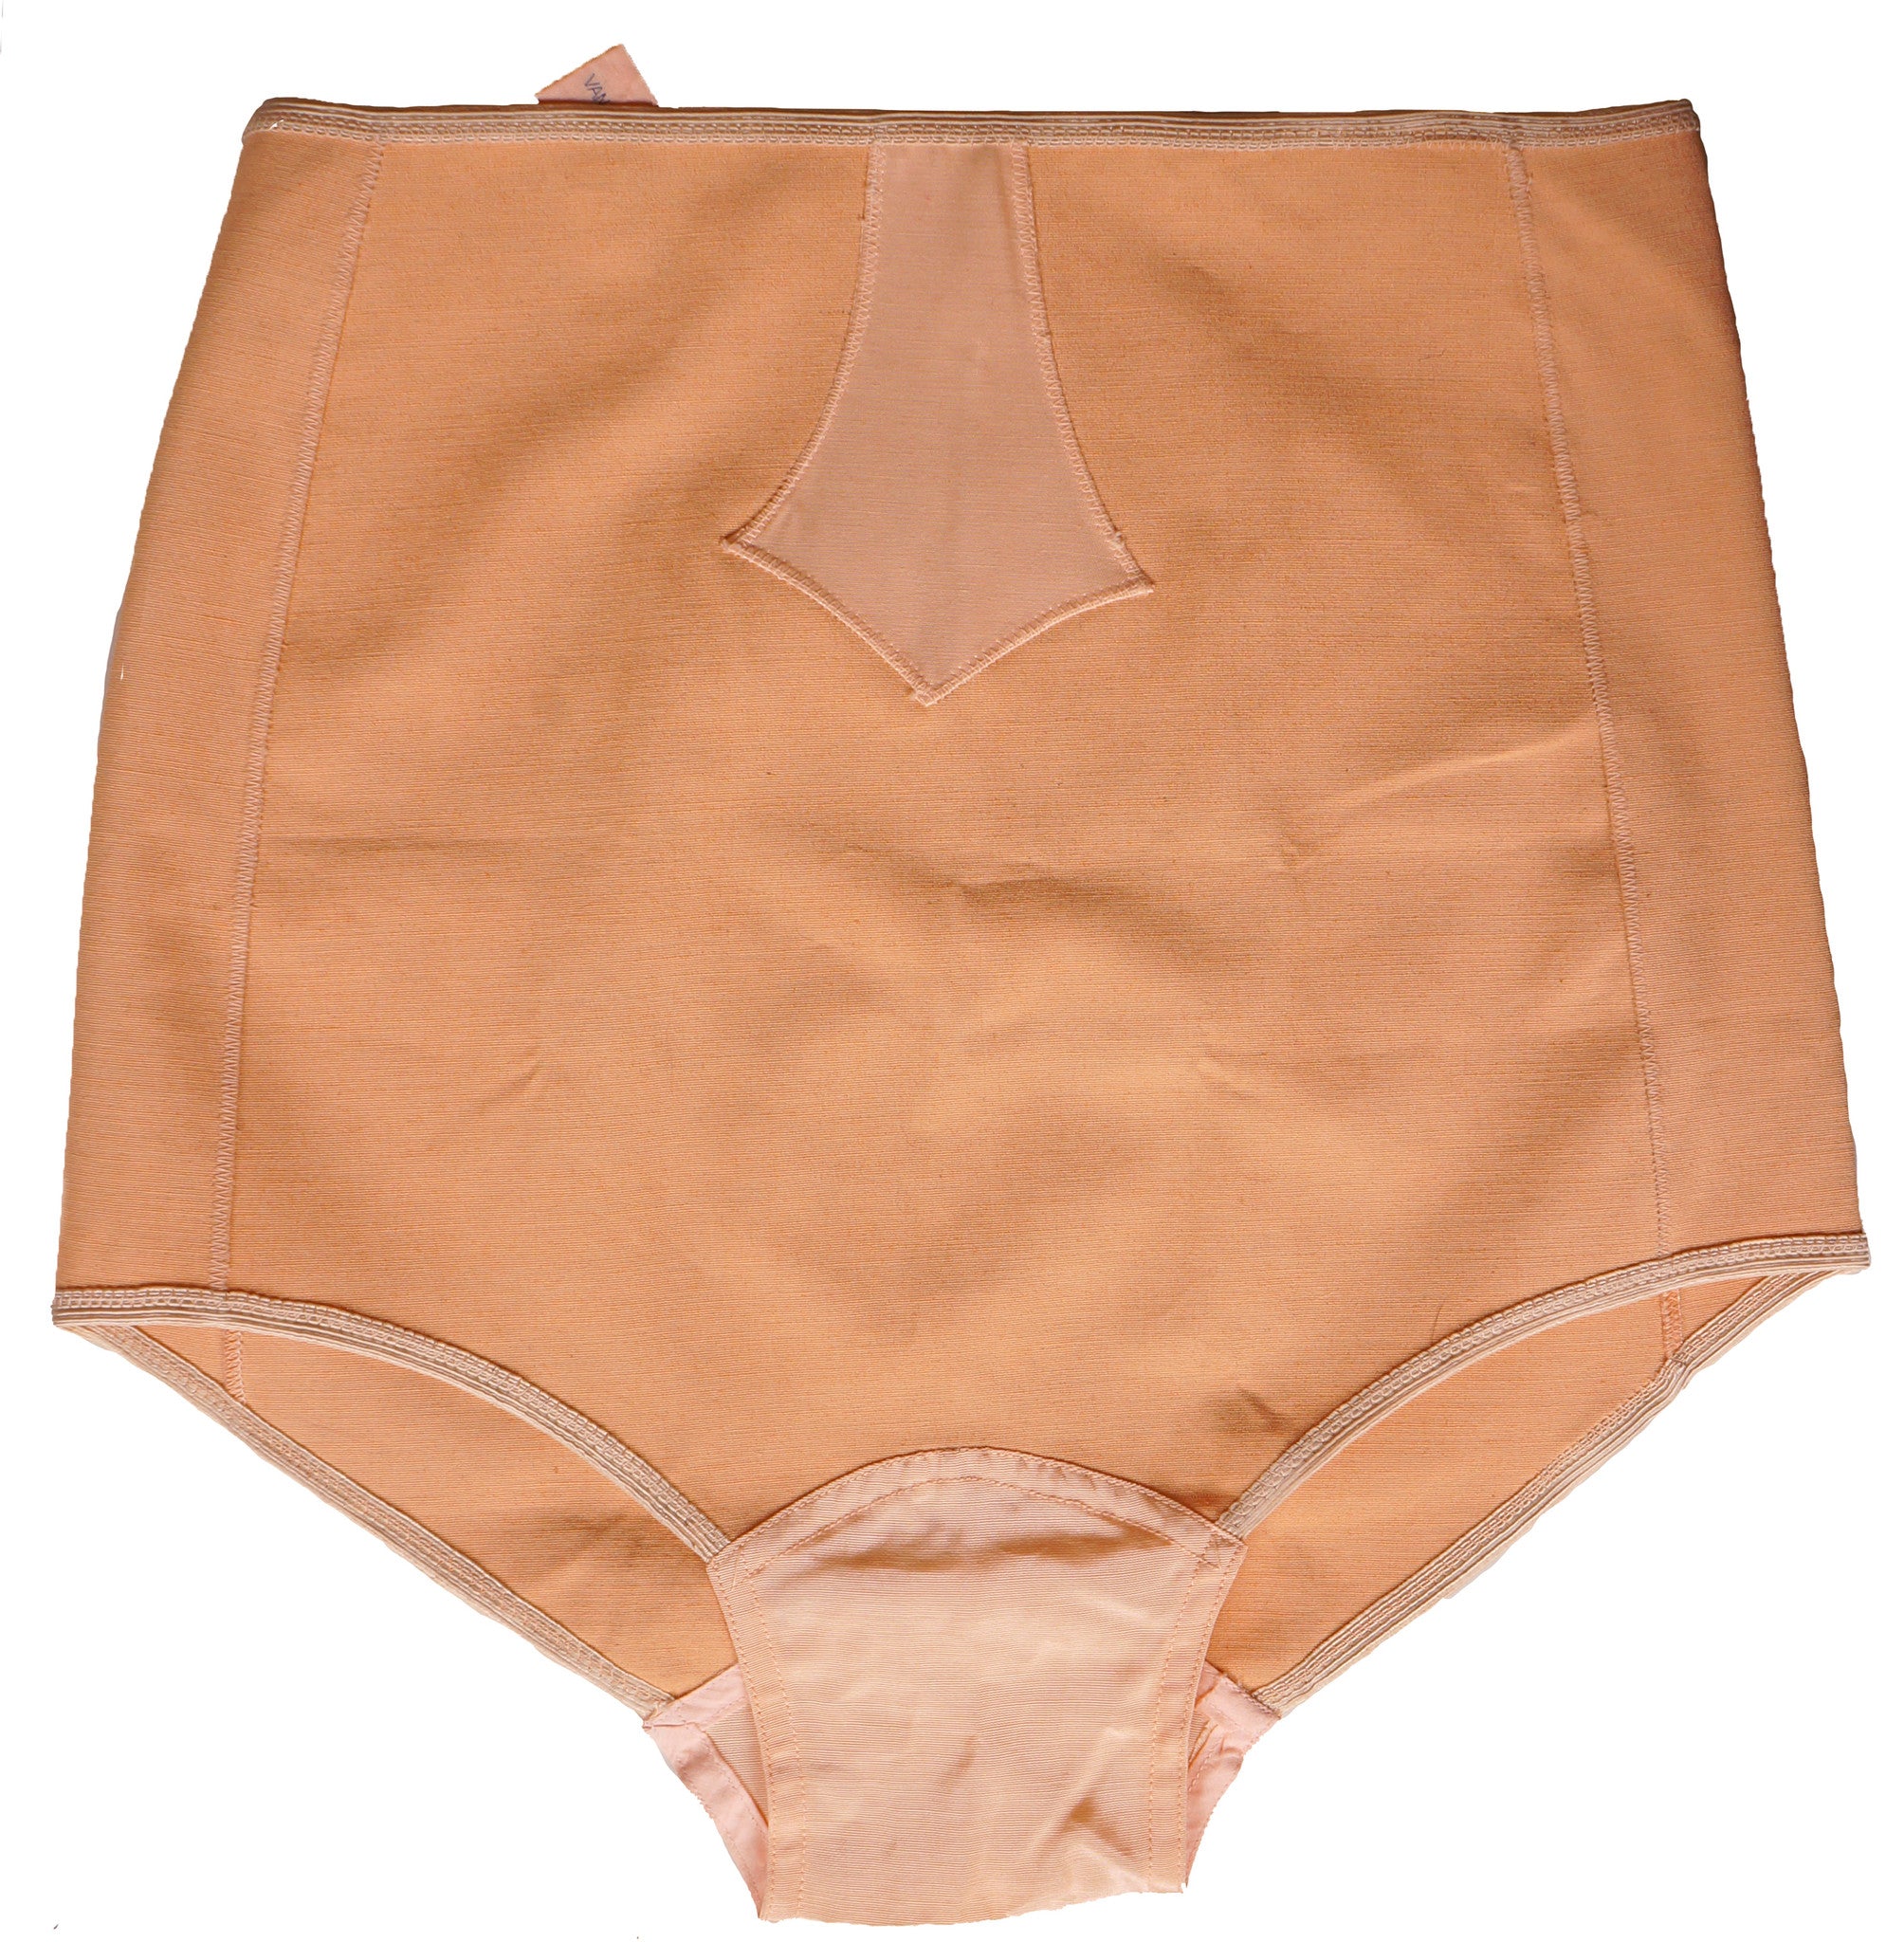 Vintage 50s Panty Girdle by Vanity Brassiere Size Medium Elasticized Panties